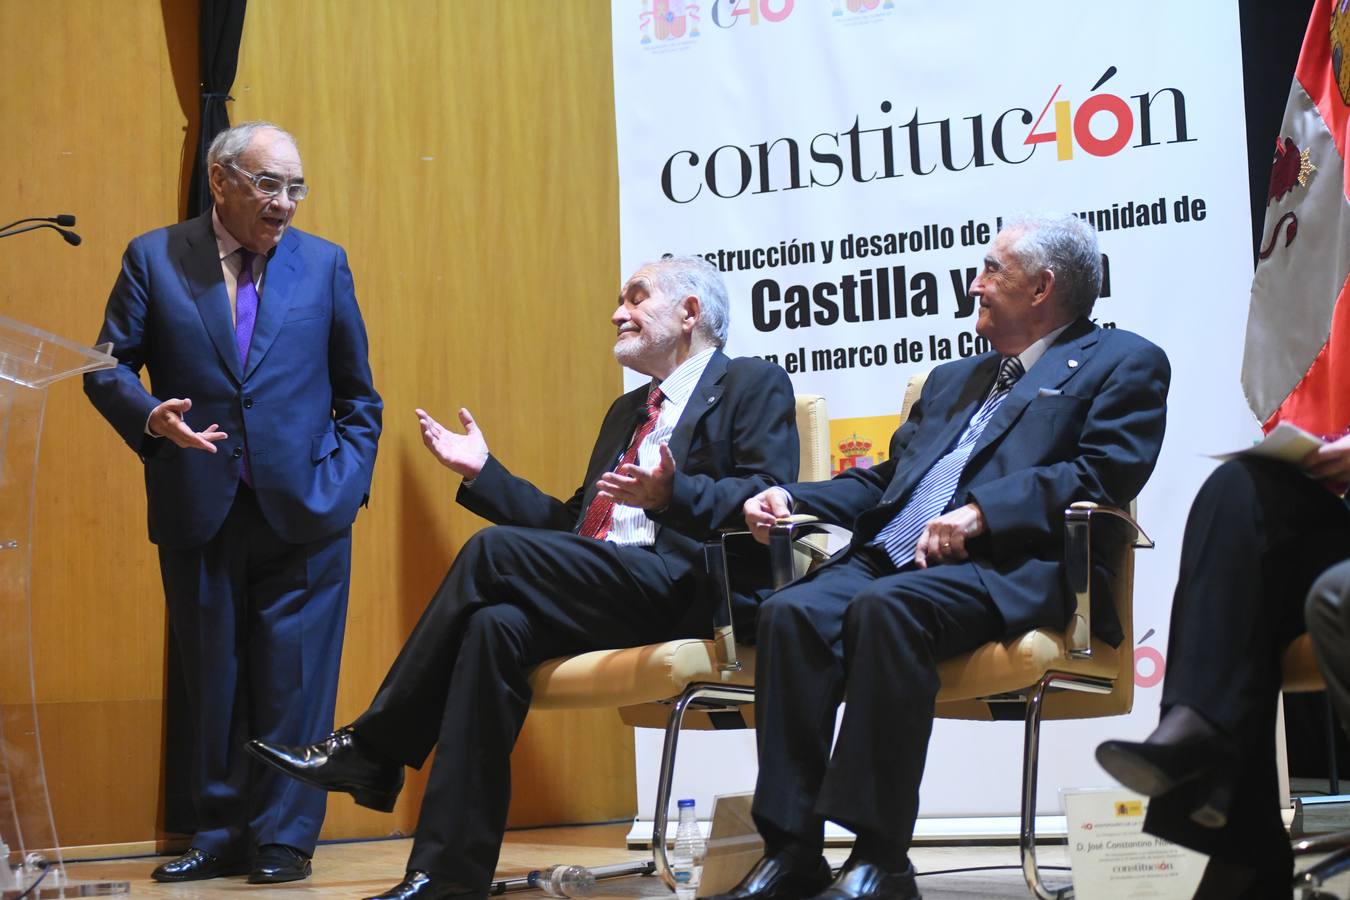 Demetrio Madrid, José Constantino Nalda, Juan José Lucas y Jesús Posada participan en el acto 'Construcción y desarrollo de la comunidad de Castilla y León en el marco de la Constitución', celebrado en las Casas del Tratado de Tordesillas 